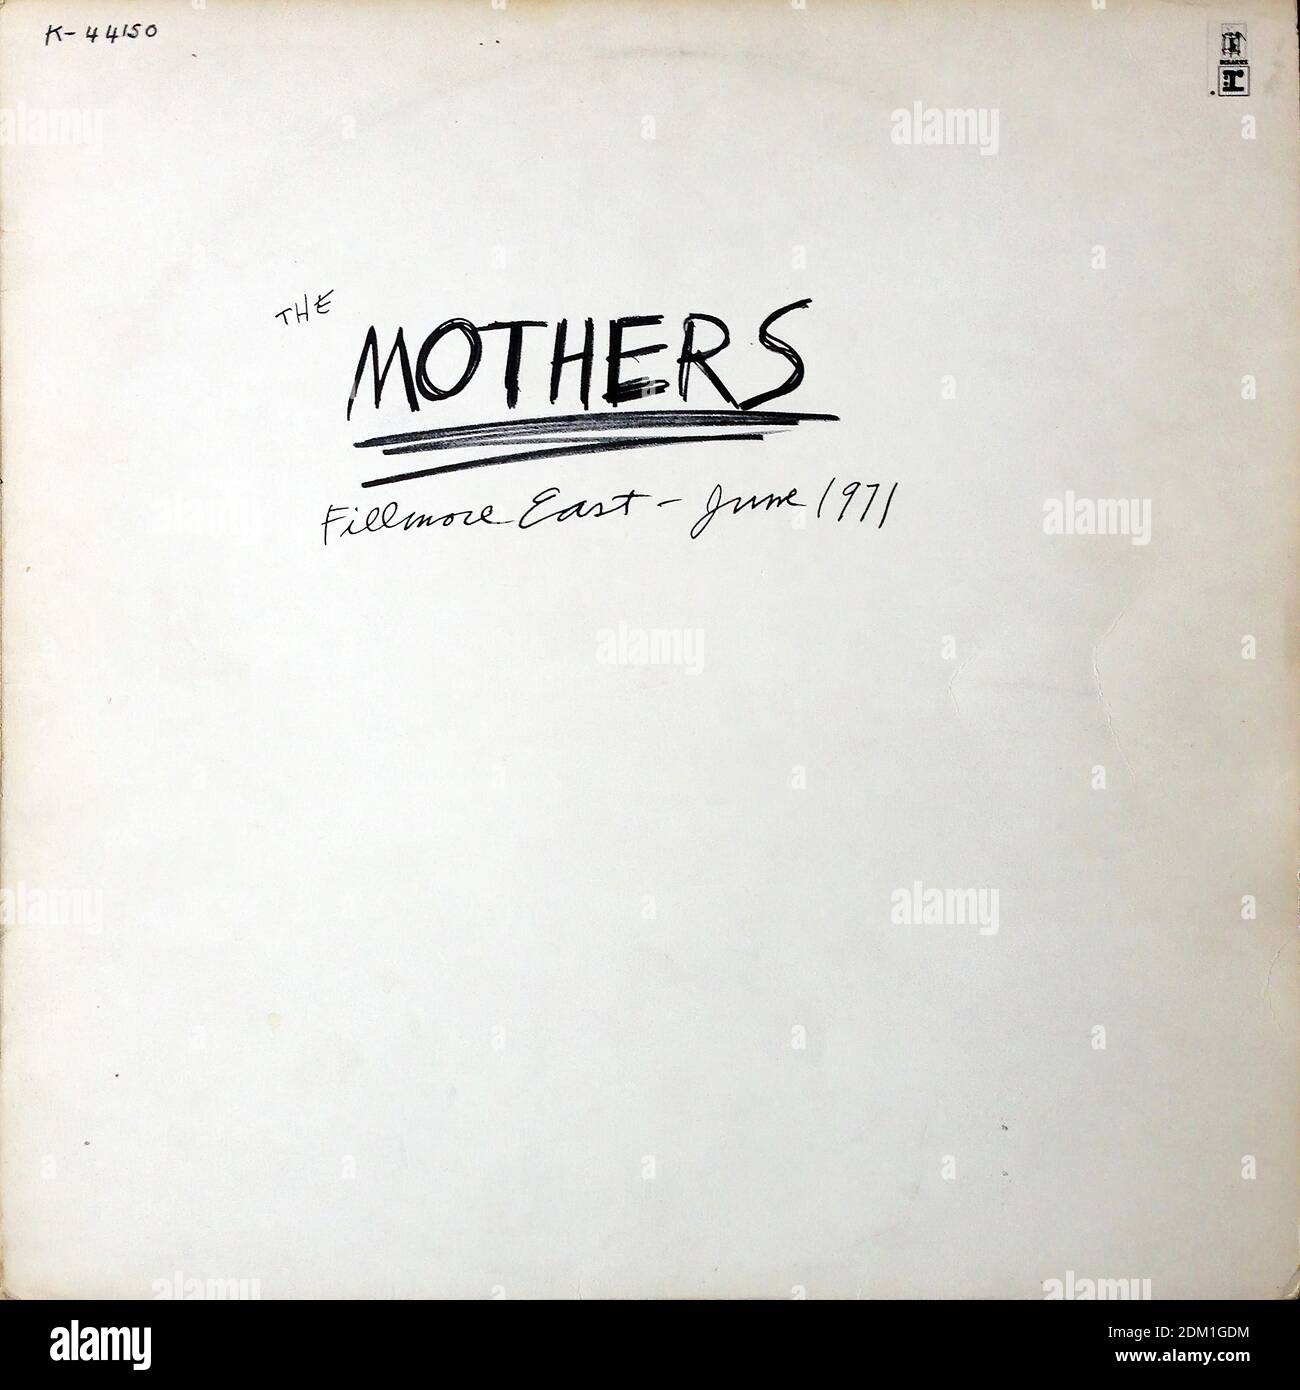 Frank Zappa & The Mothers - Fillmore East - Giugno 1971, Reprise K-44150 - copertina di album in vinile d'epoca Foto Stock